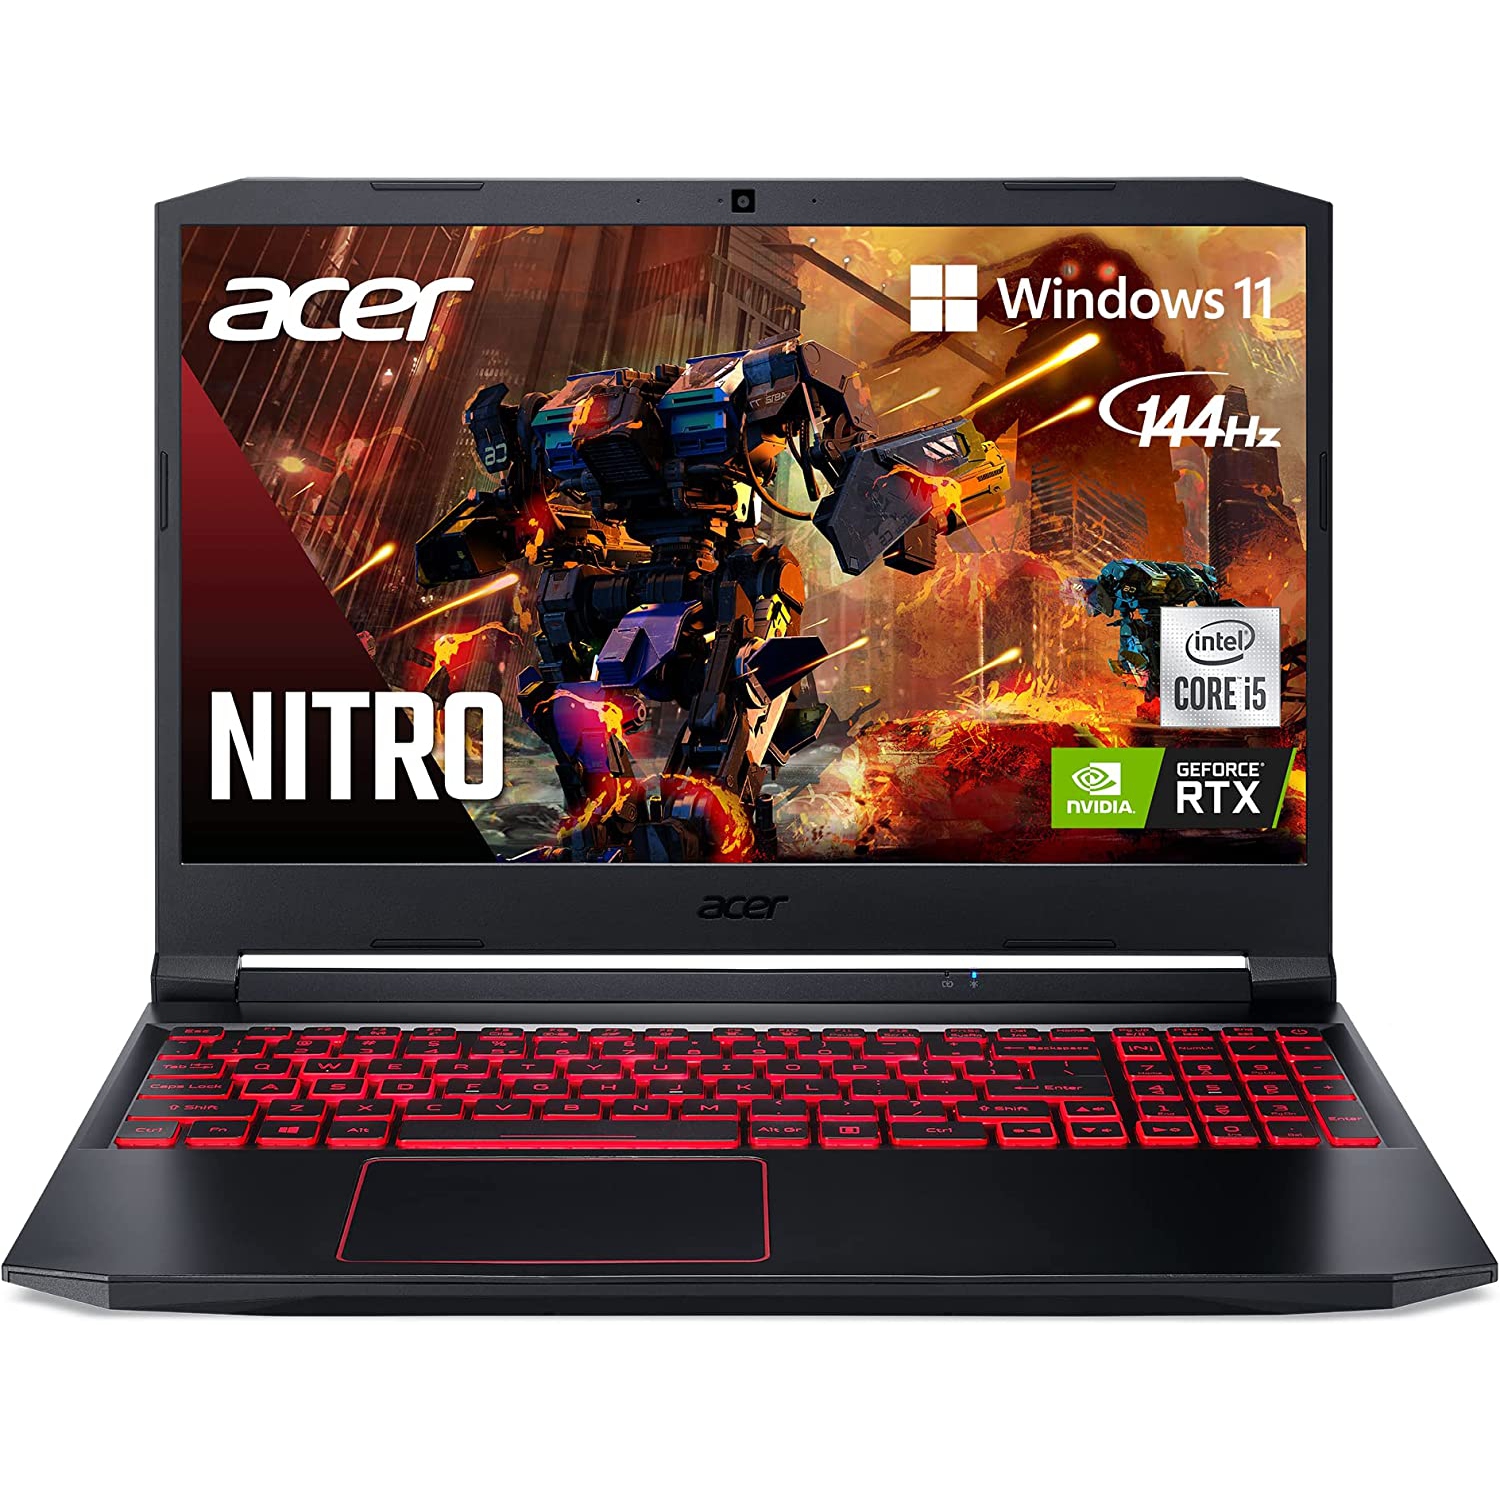 Acer 15.6" Nitro 144Hz (Intel i5-10300H/512GB SSD/8GB RAM/Nvidia RTX 3050/Win11) - Manufacturer ReCertified w/ 1 Year Warranty